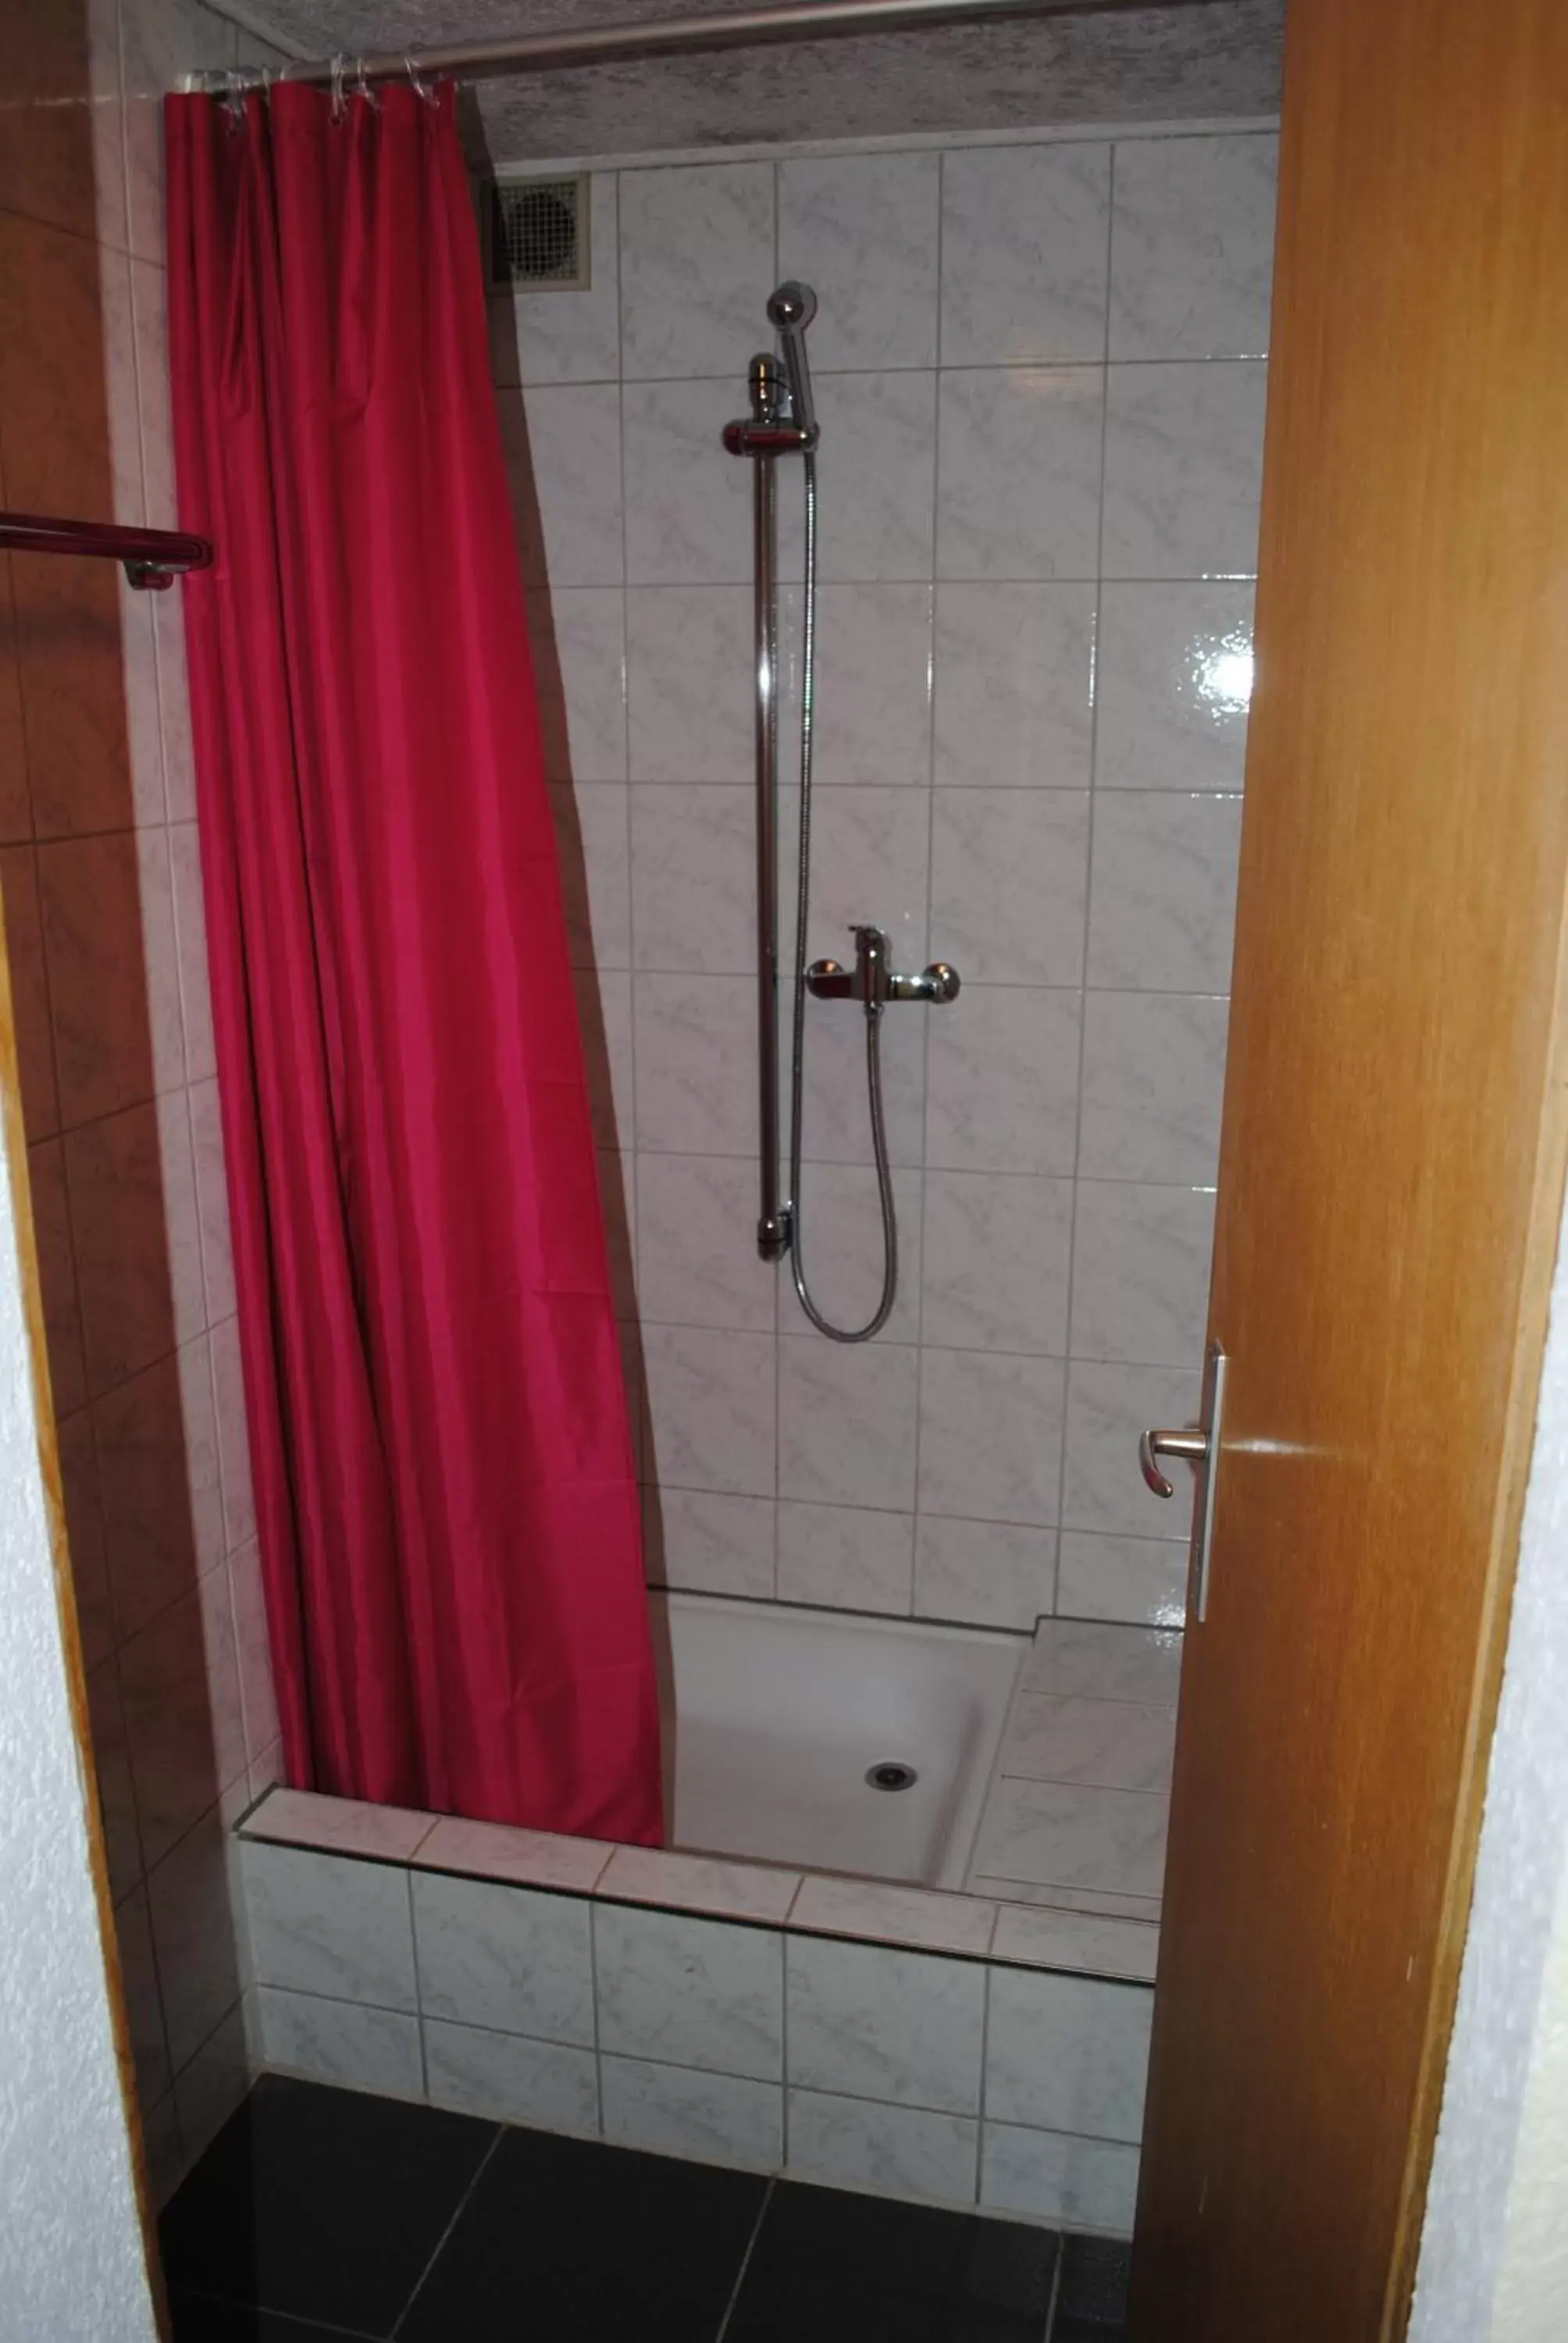 Bathroom in Hotel Weisses Kreuz